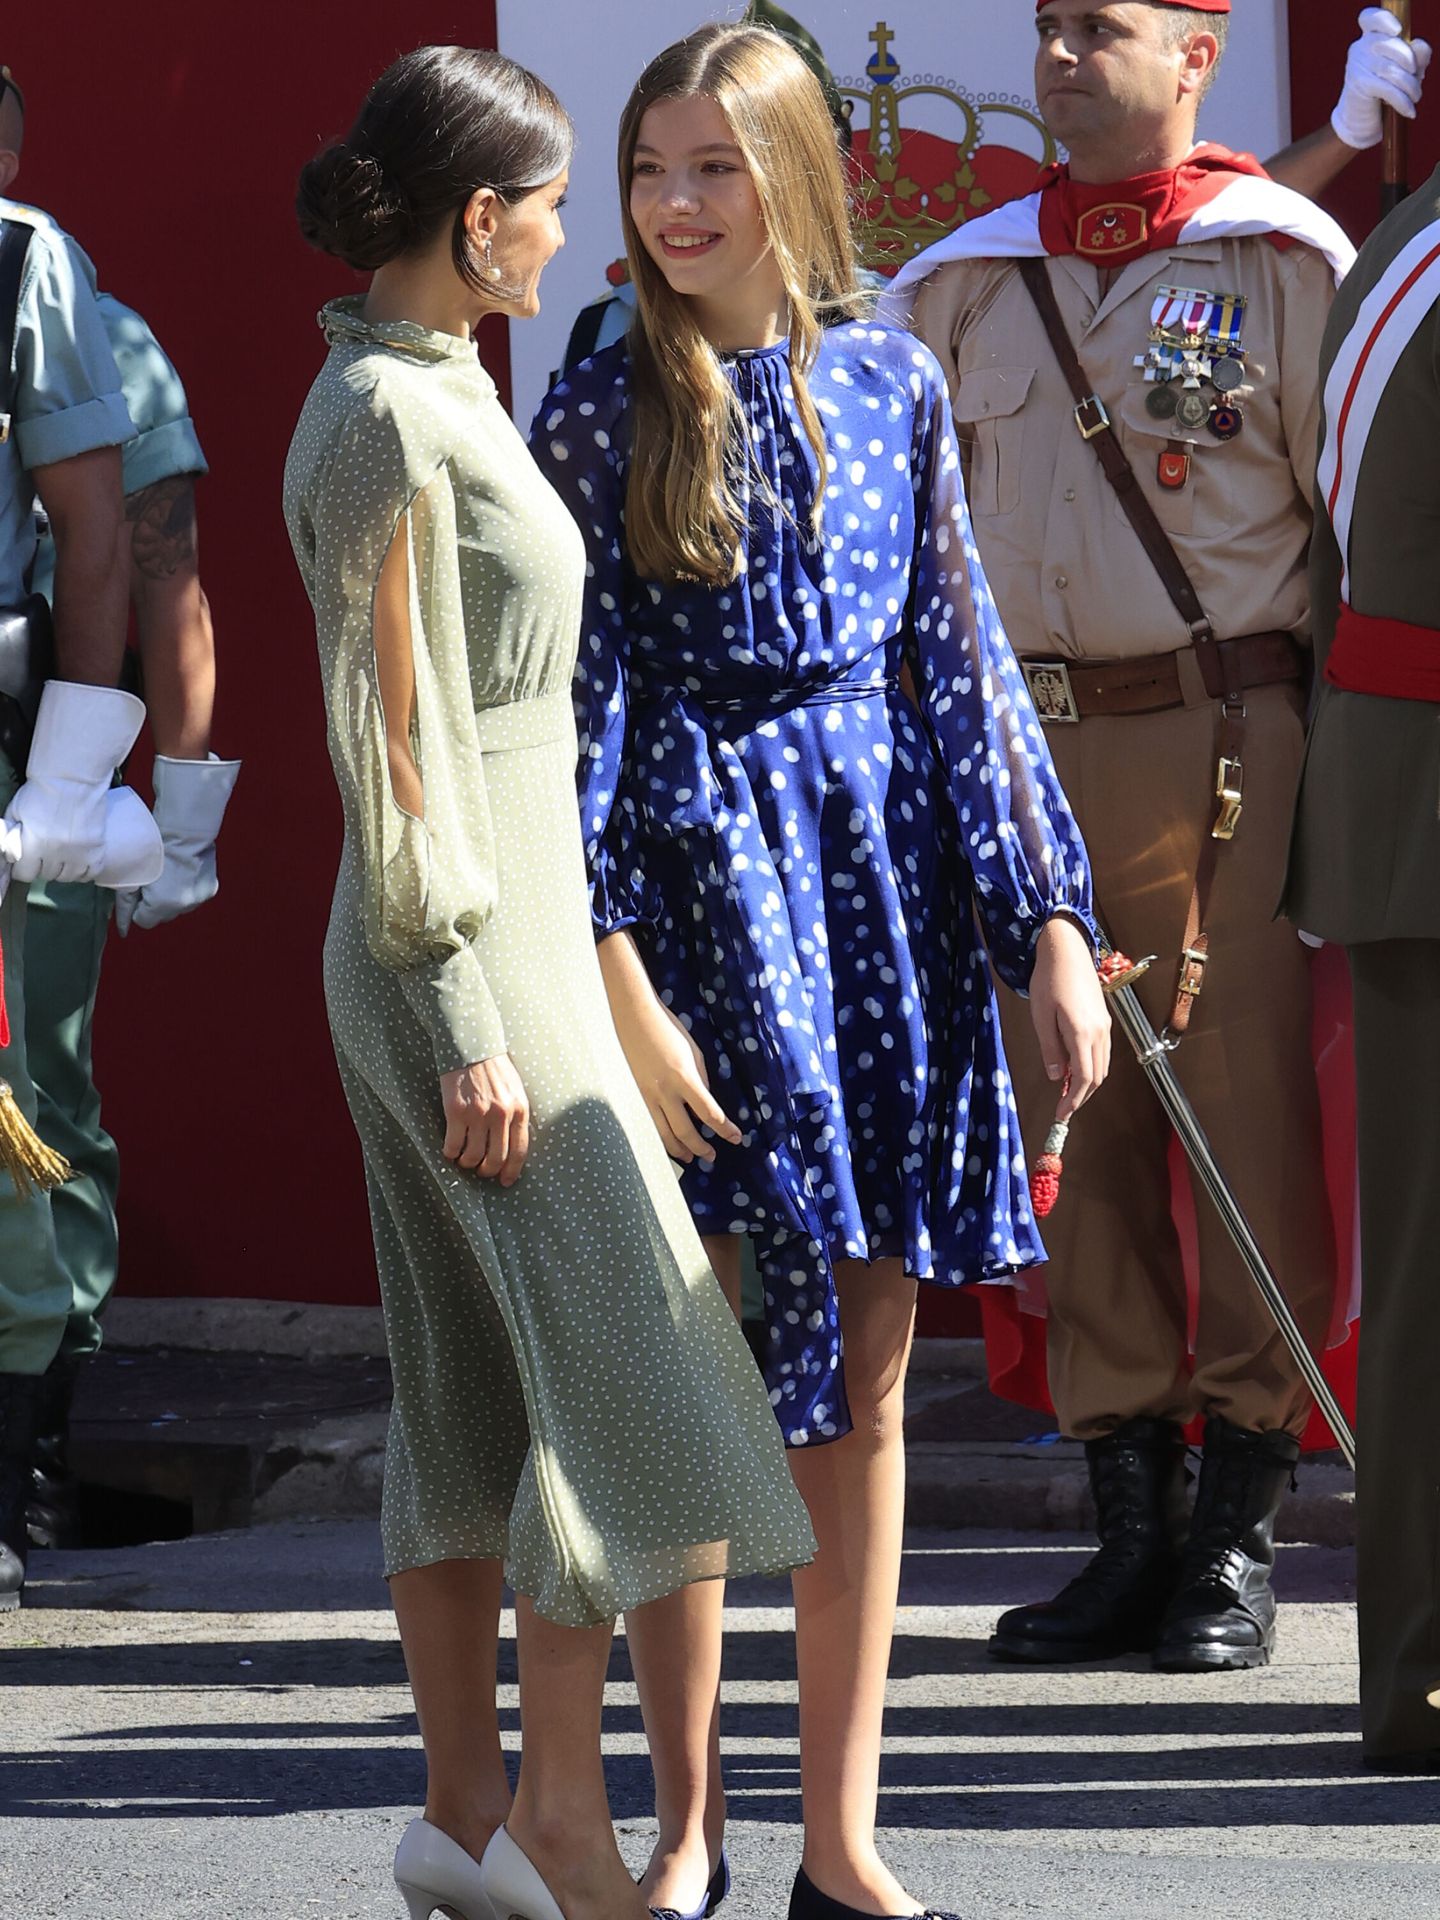 La reina Letizia conversa con la infanta Sofía al finalizar el desfile del Día de la Fiesta Nacional. (EFE/Zipi)